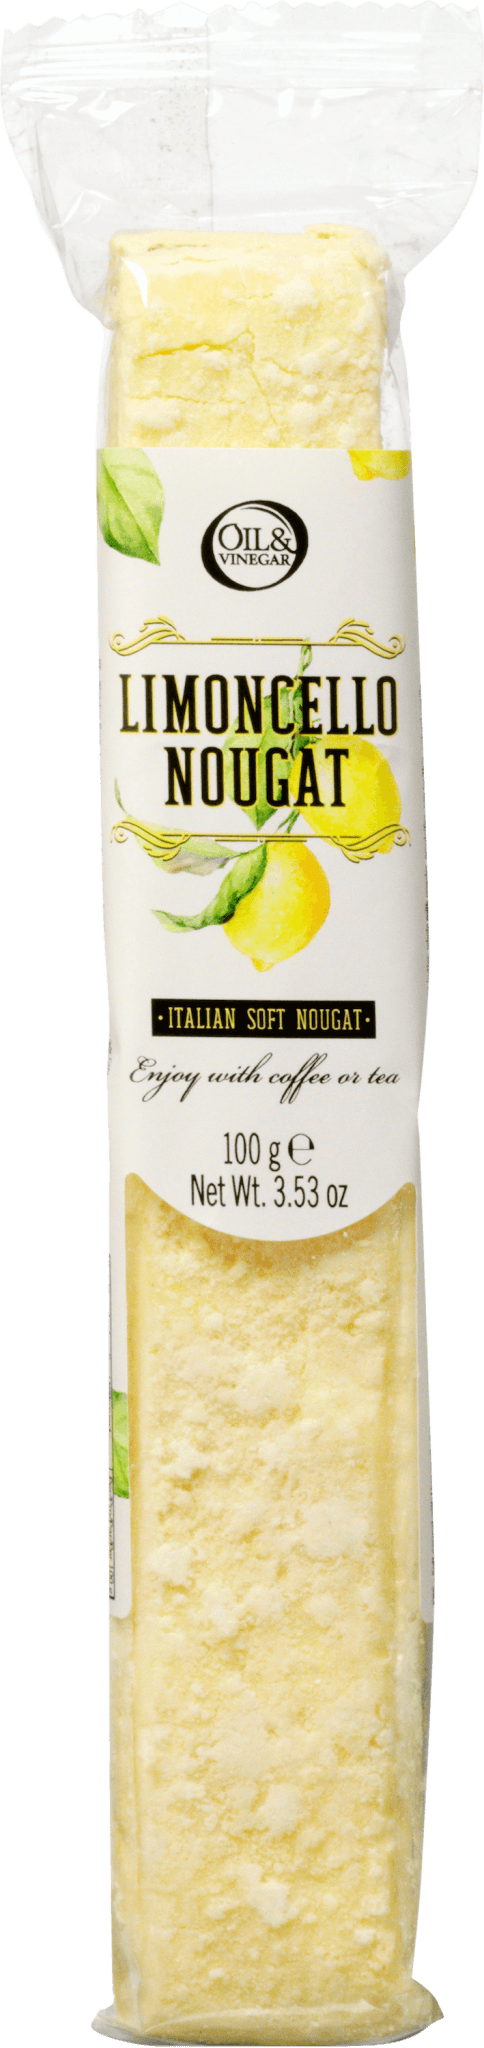 Limoncello Nougat 100 g - oilvinegar.ch